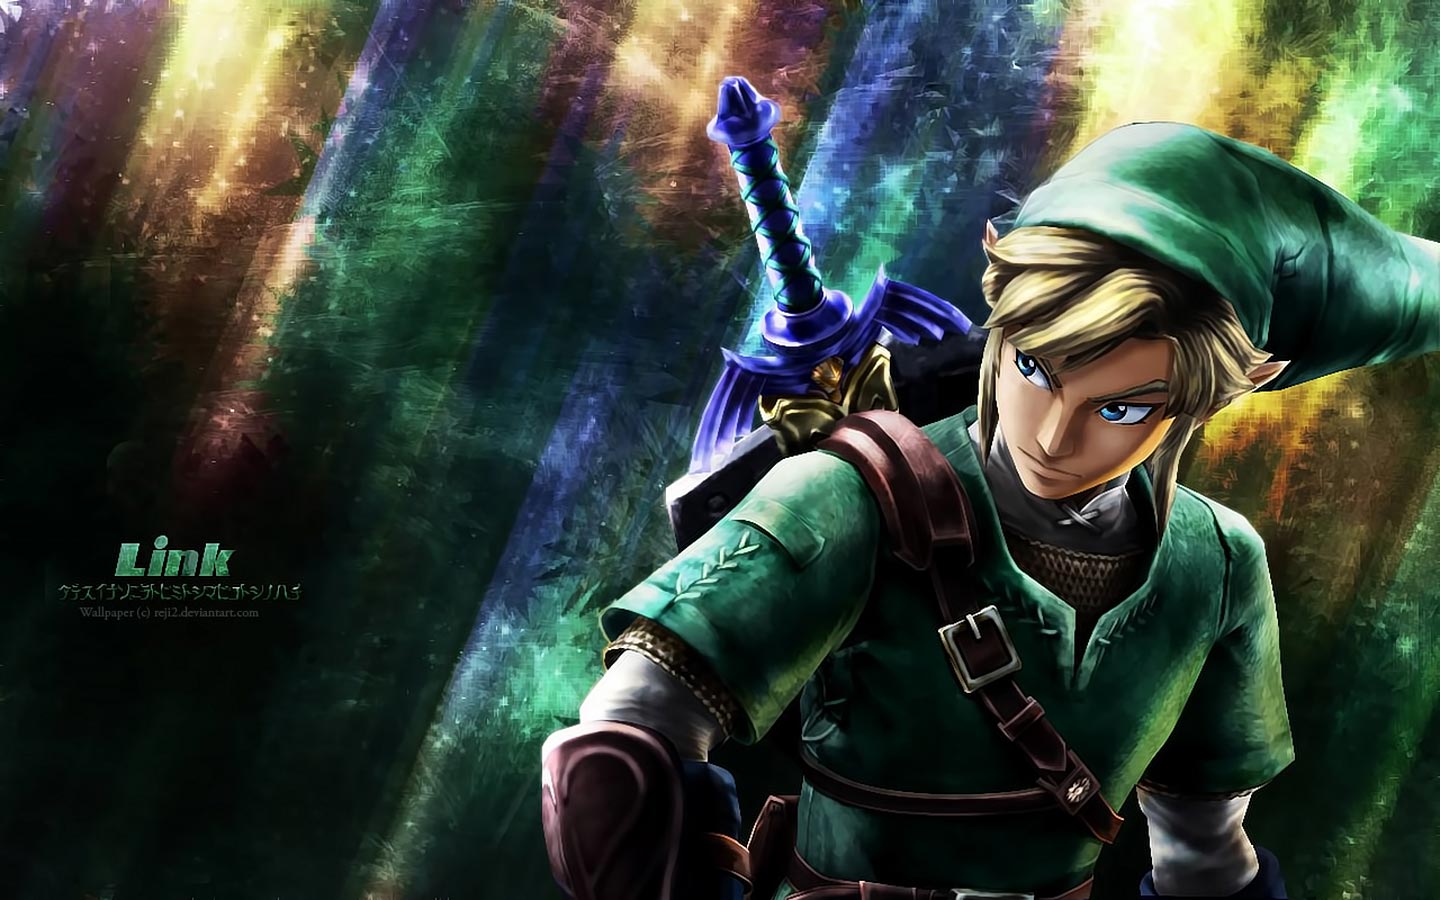 Legend of Zelda, The - Twilight Princess (Europe) (En,Fr,De,Es,It) ISO